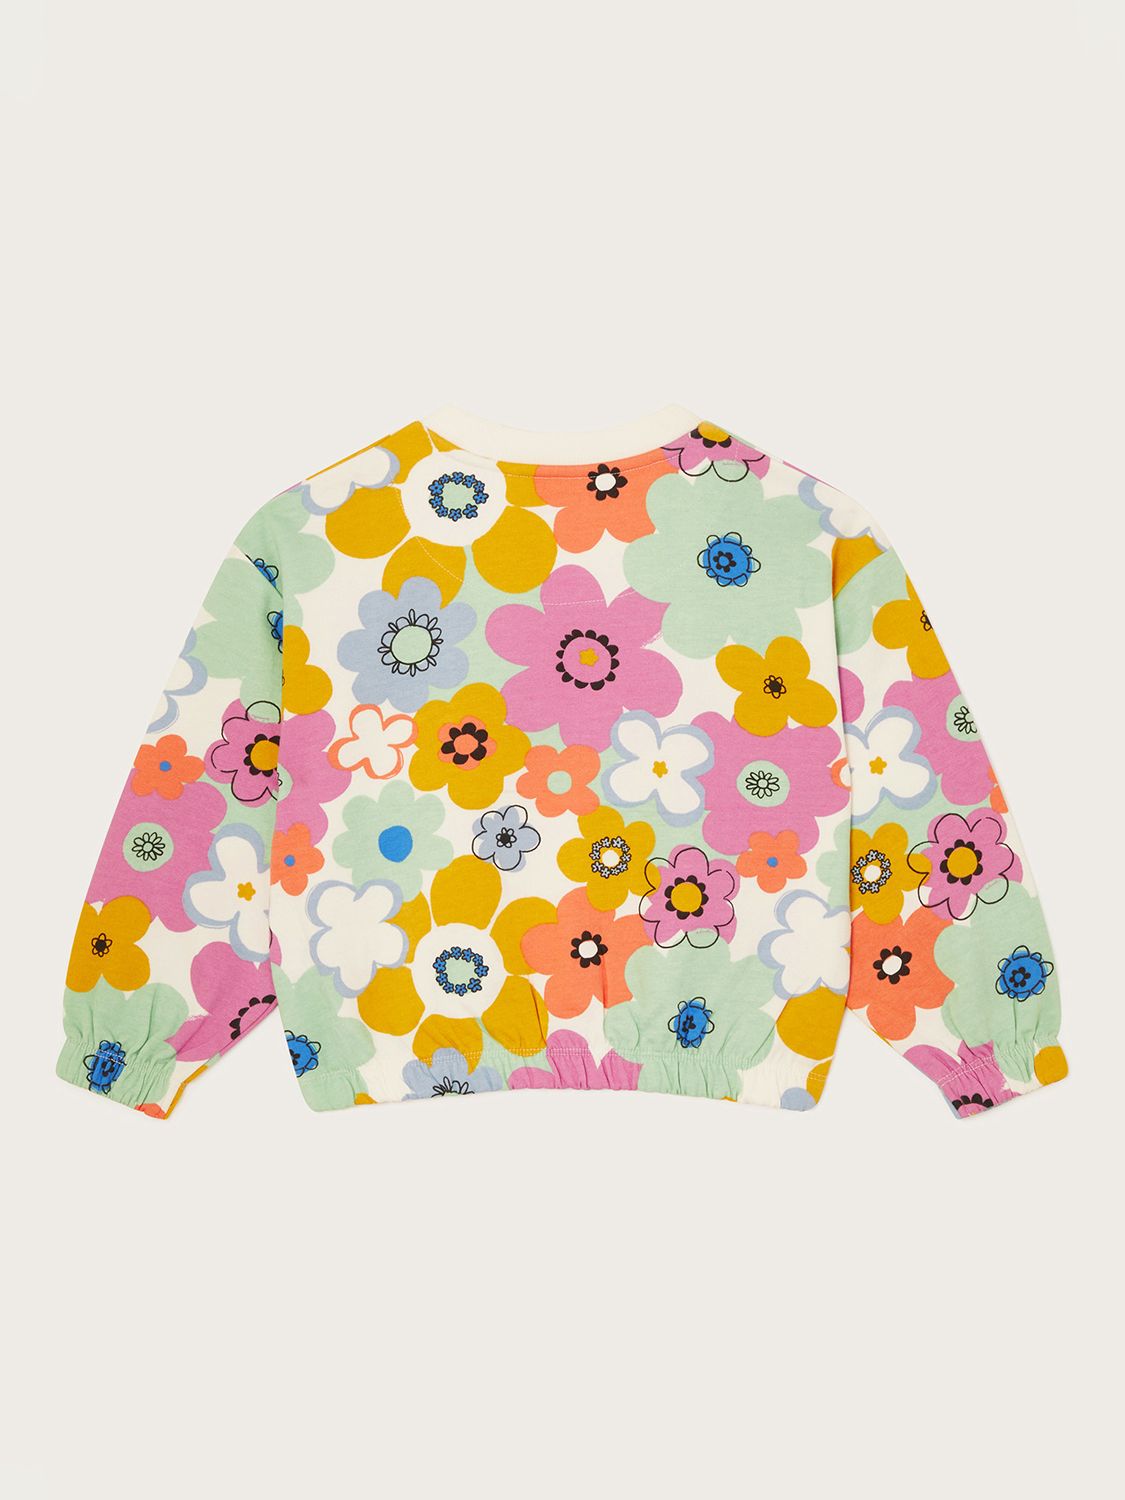 Monsoon Kids' Retro Floral Print Sweatshirt, Multi, 3-4 years